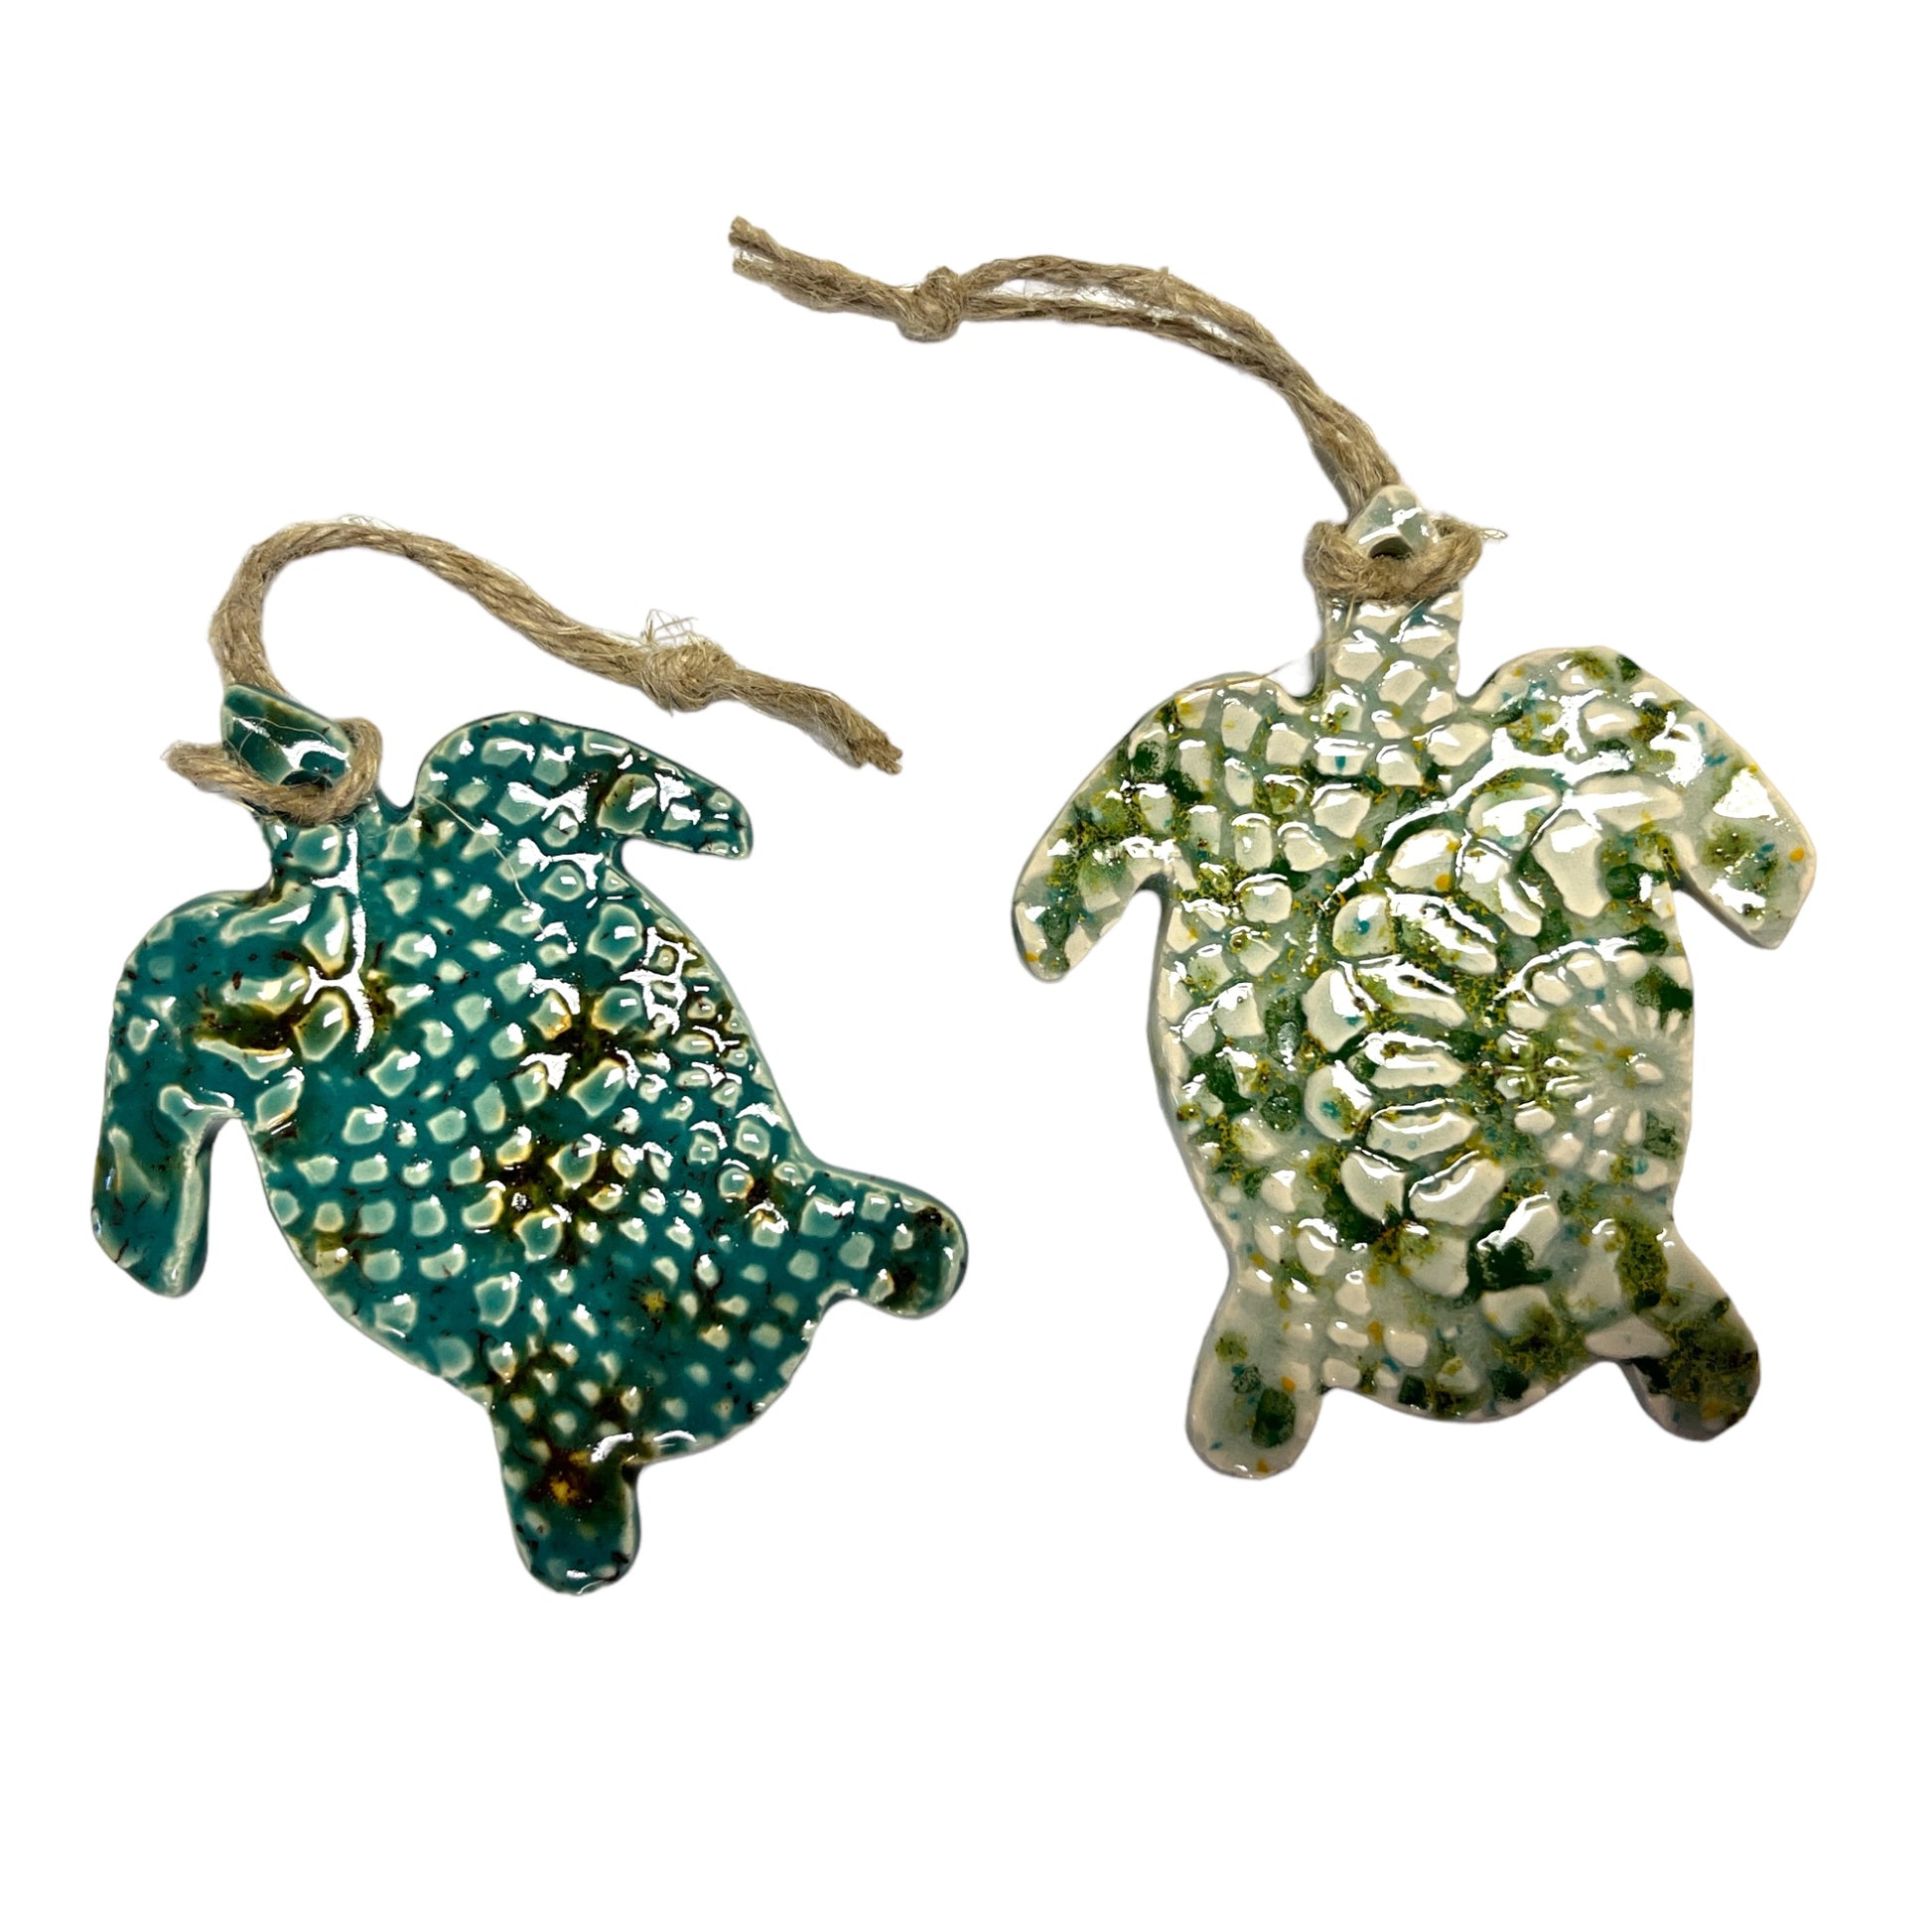 Sea Turtle ornaments